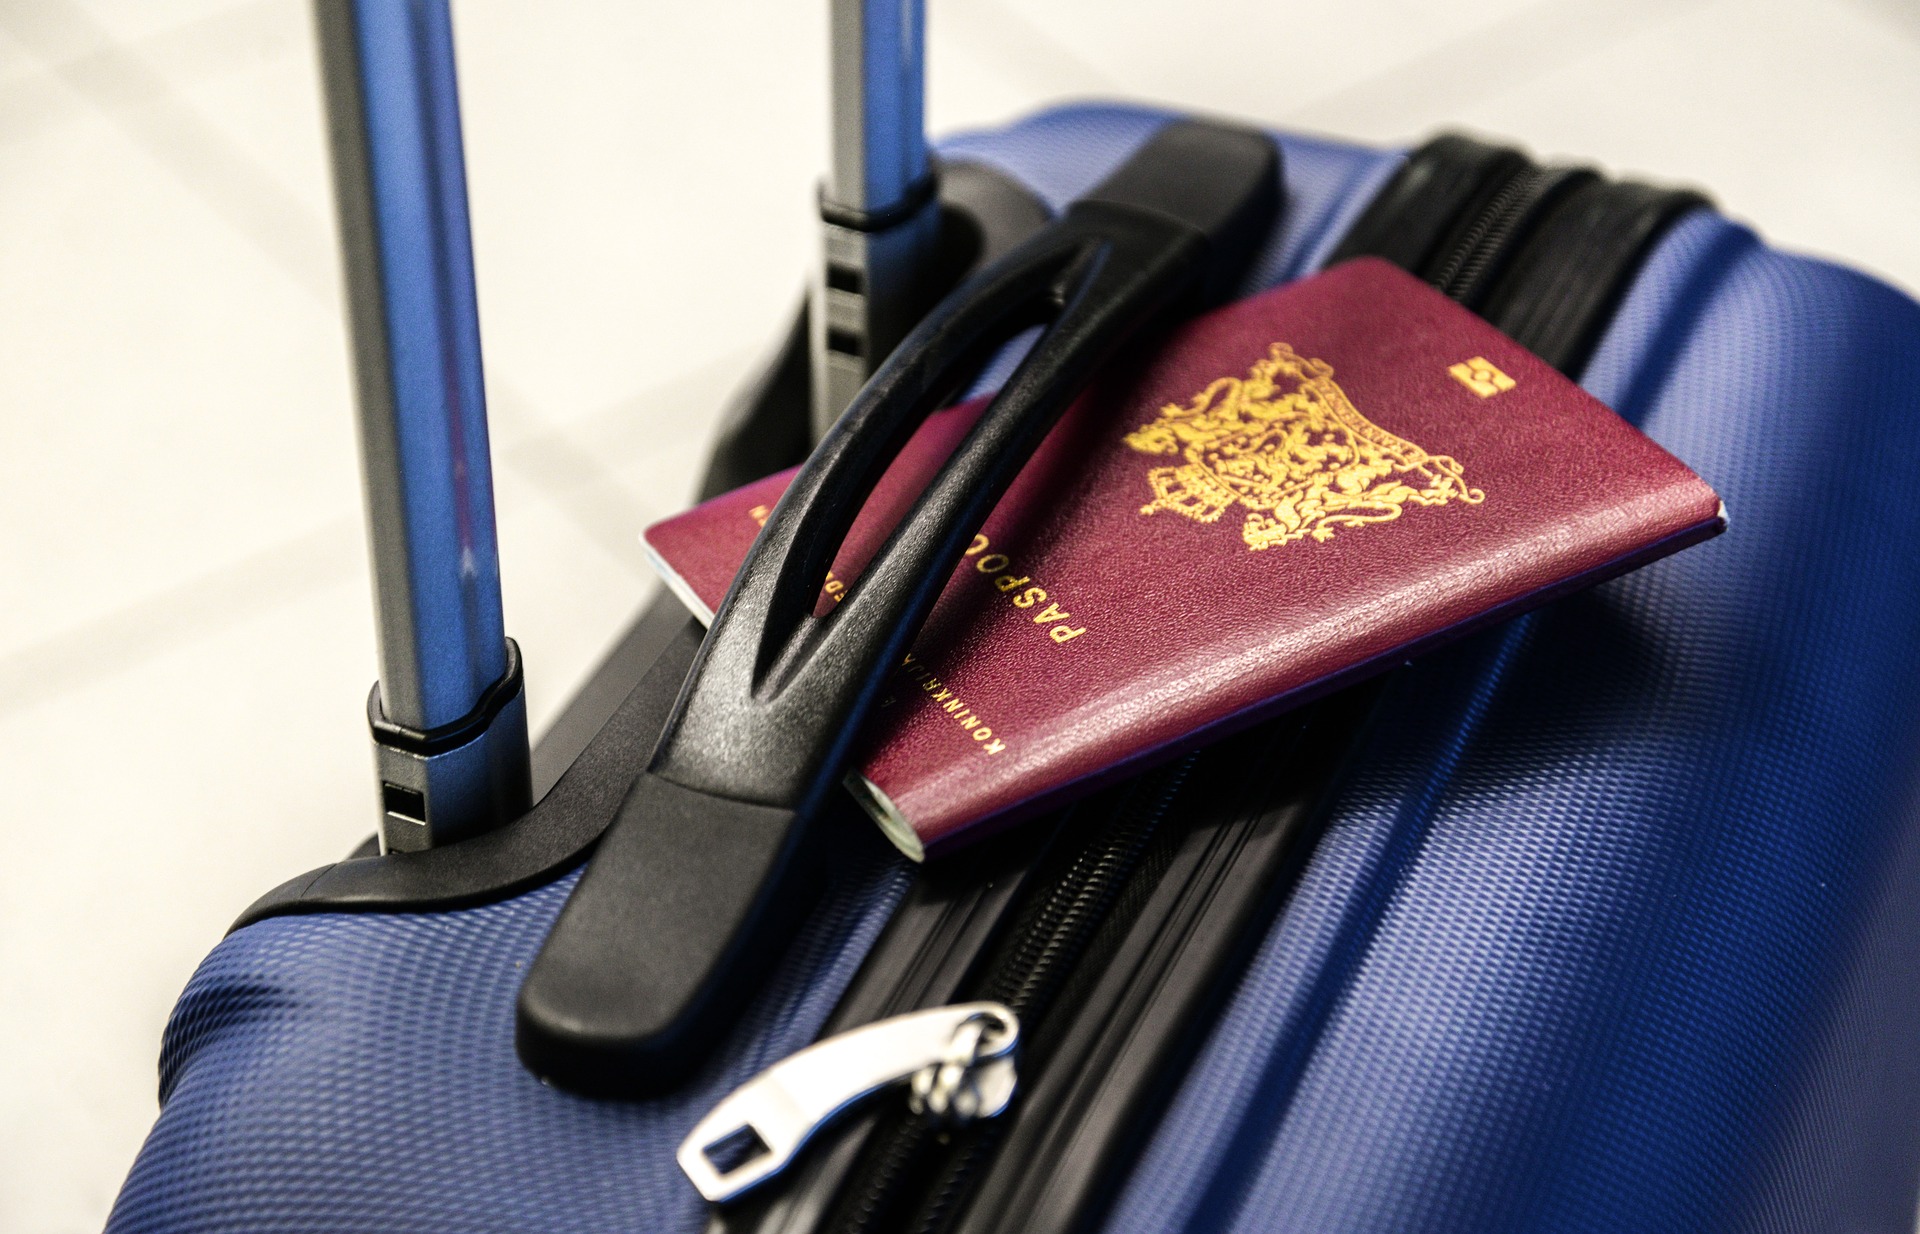 Equipatge perdut a l'aeroport: el truc per trobar fàcilment la vostra maleta!